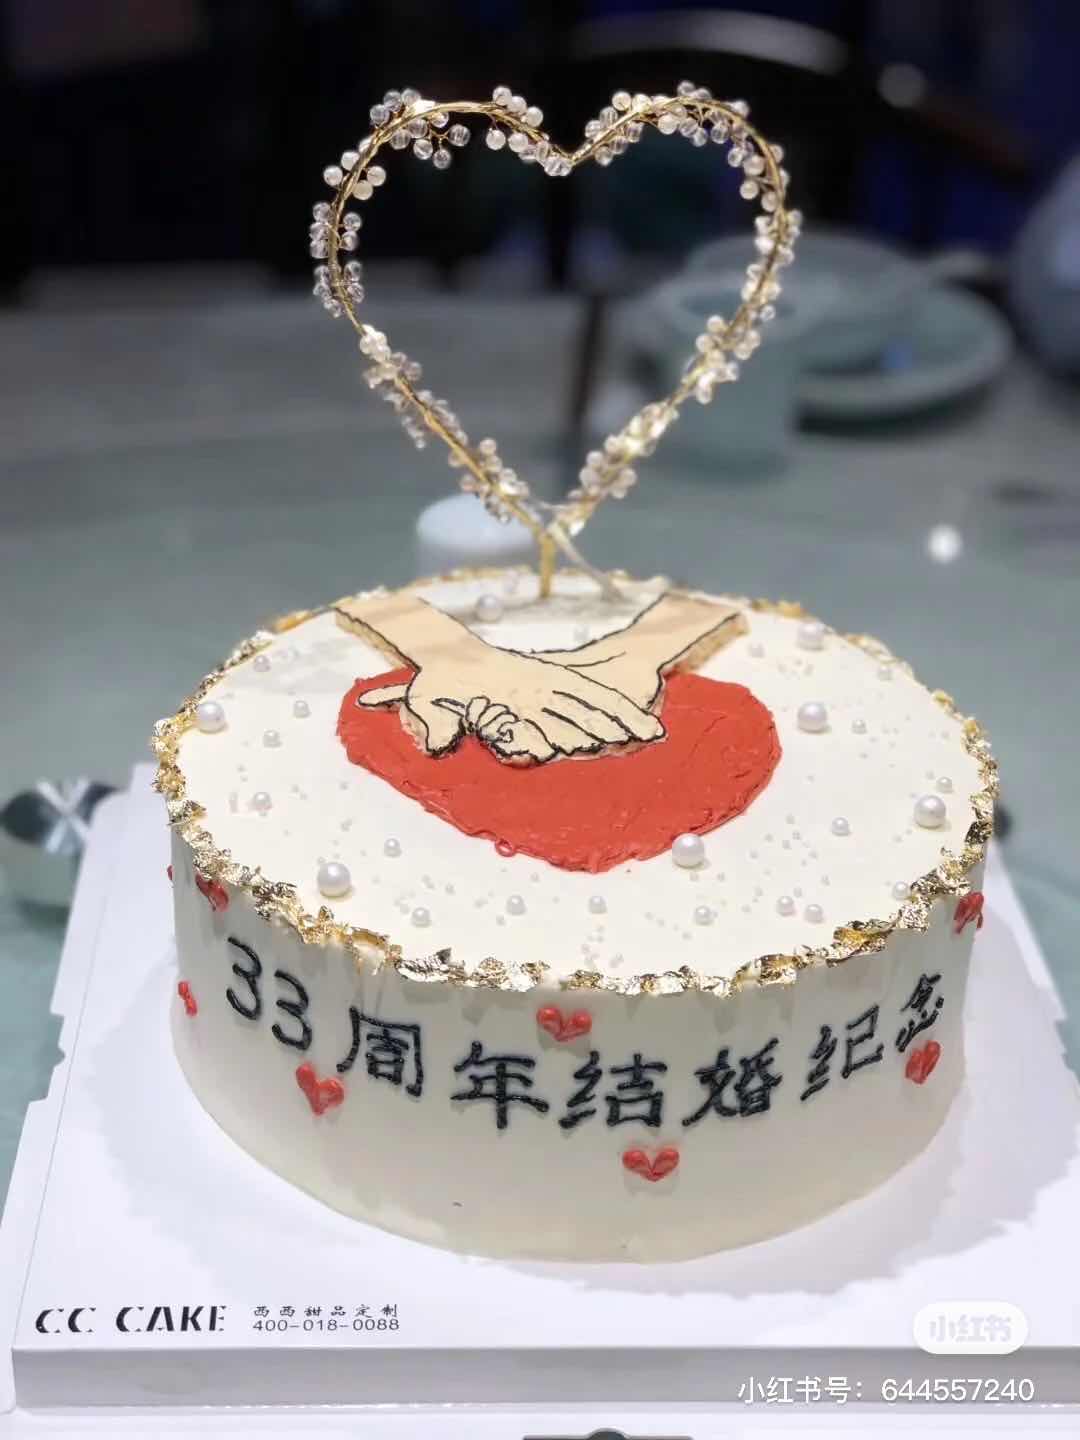 个人生日_商家店庆_企业周年庆_纪念日蛋糕鲜花礼品在线庆祝网